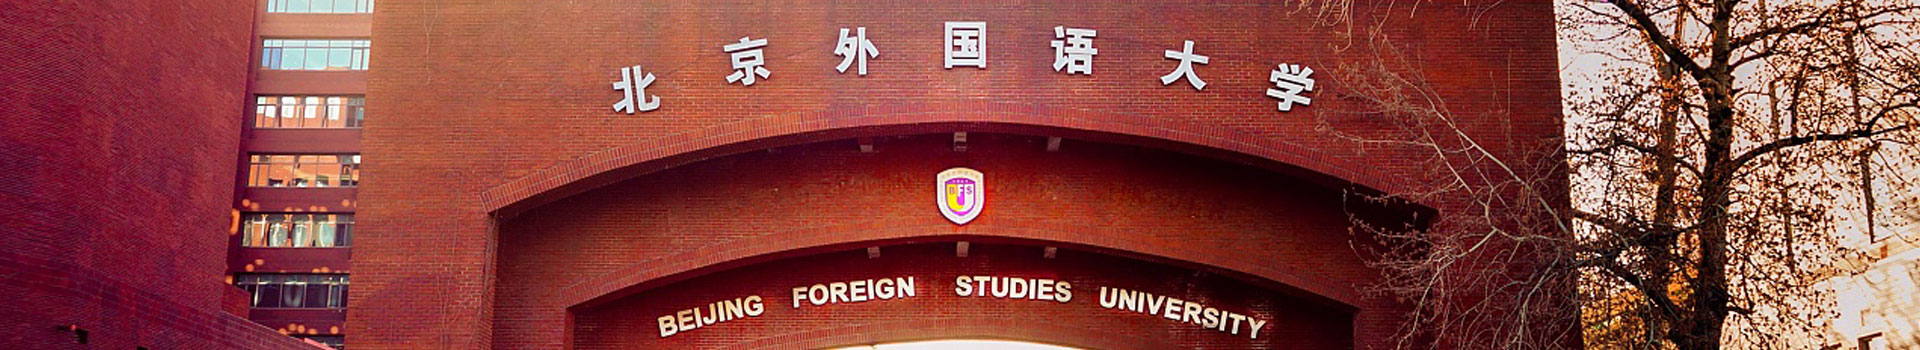 北京外国语大学意大利留学预科中心